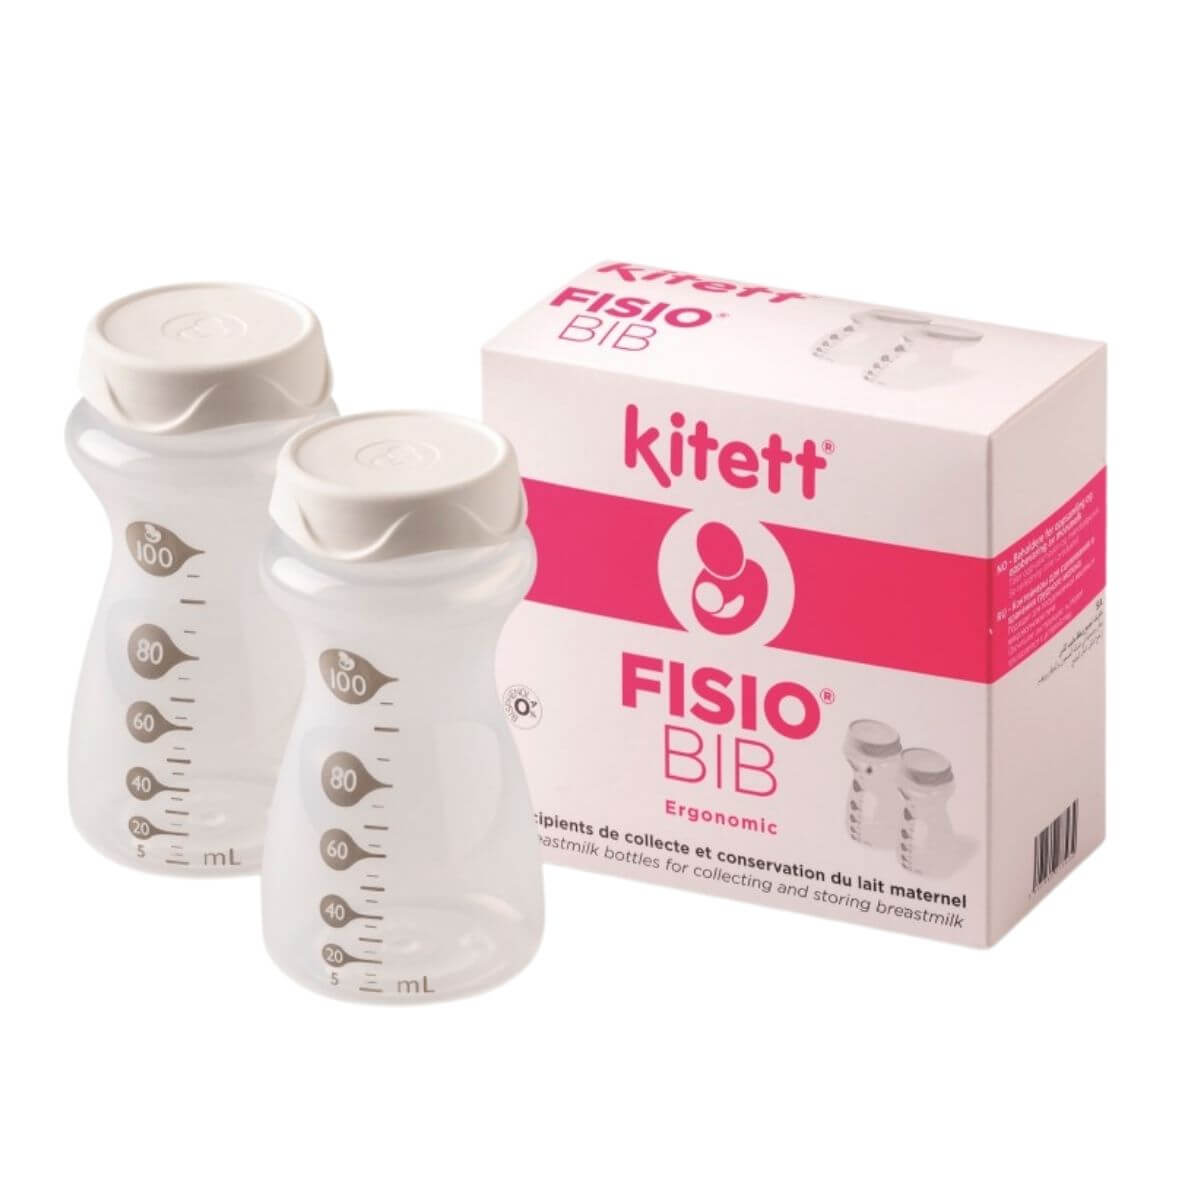 Lot de 2 récipients pour lait maternel (2x100ml) Fisio Bib